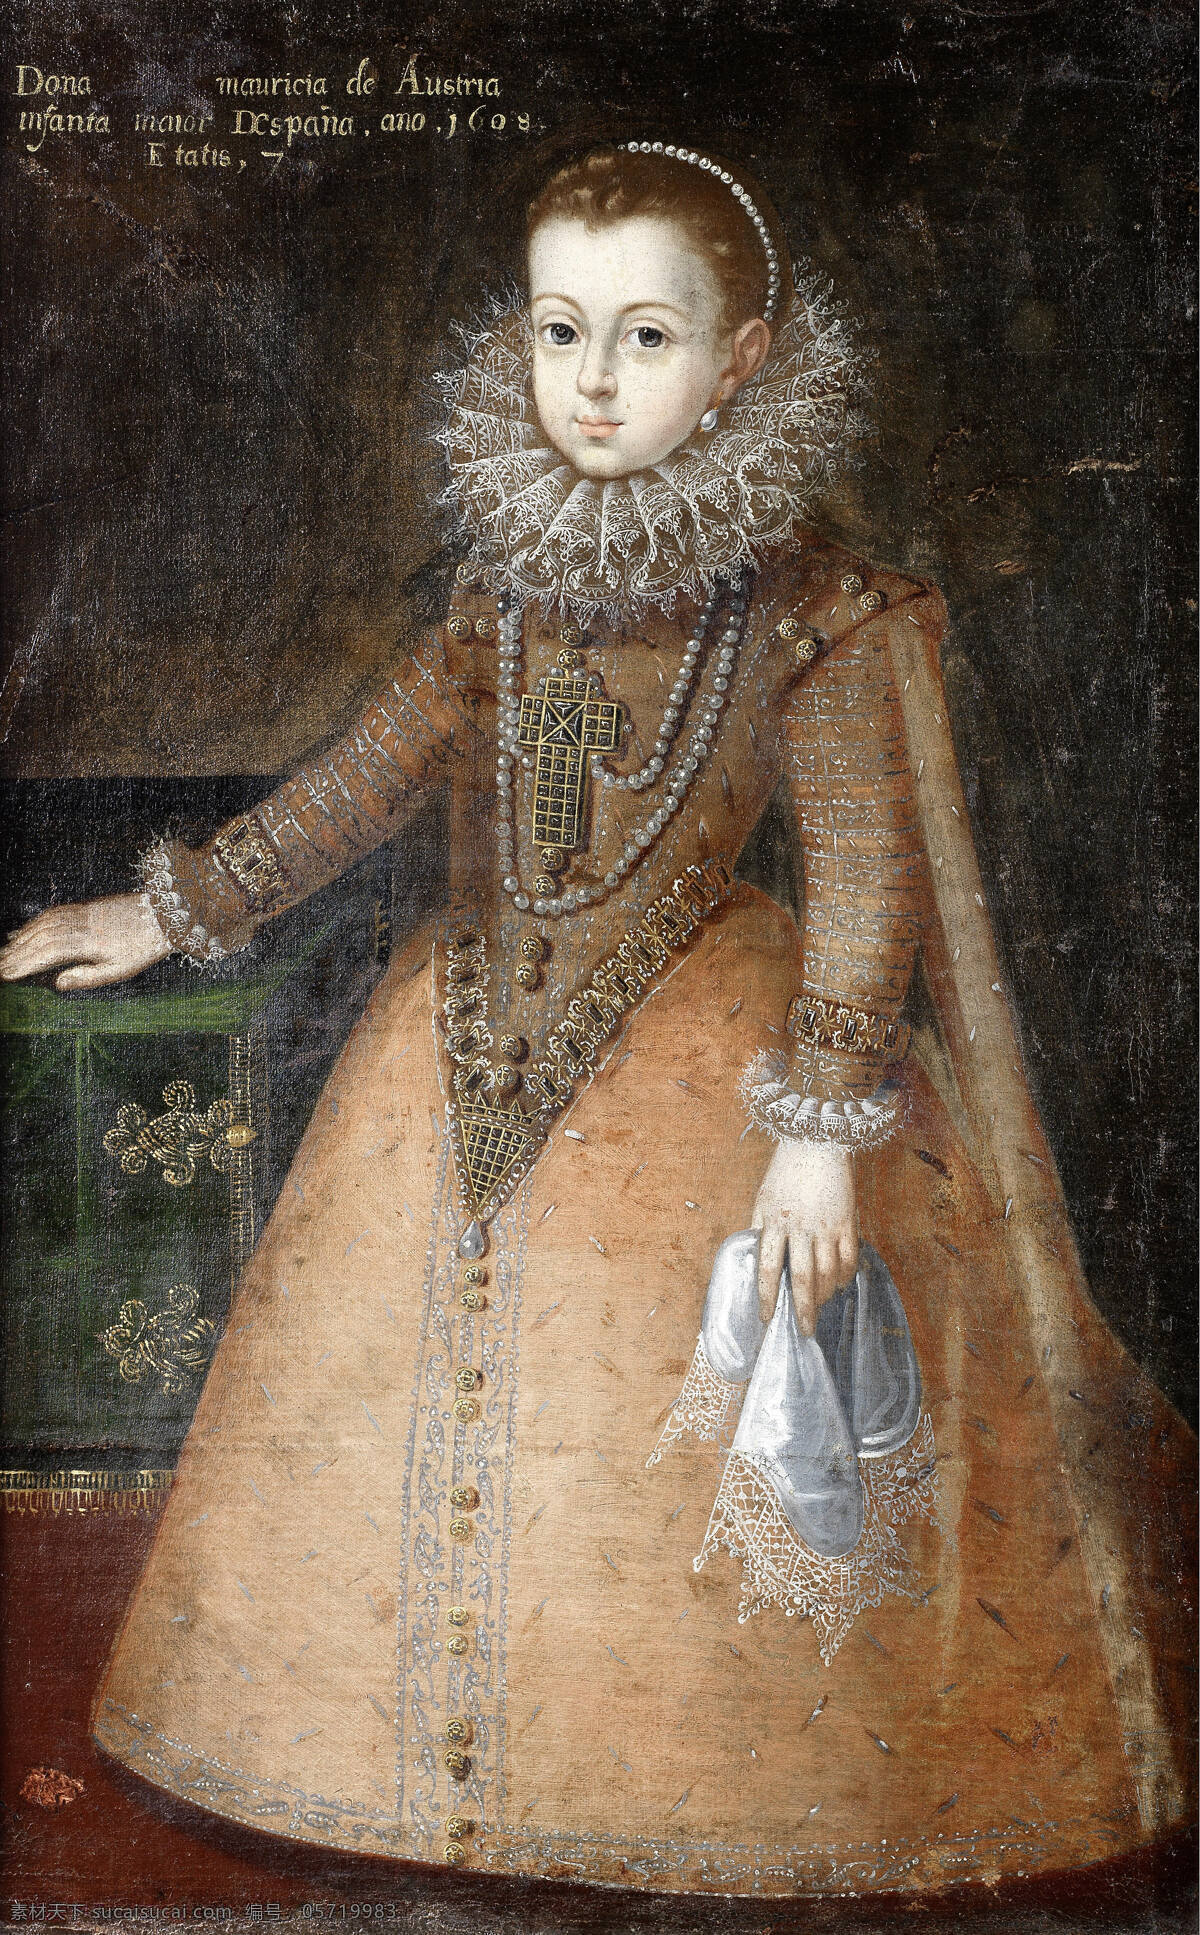 古典油画 绘画书法 文化艺术 油画 奥地利 安娜 设计素材 模板下载 奥地利的安娜 西班牙公主 菲利普 三世 长女 路易十三之妻 法国王后 路易十四之母 童年时代 巴洛克时代